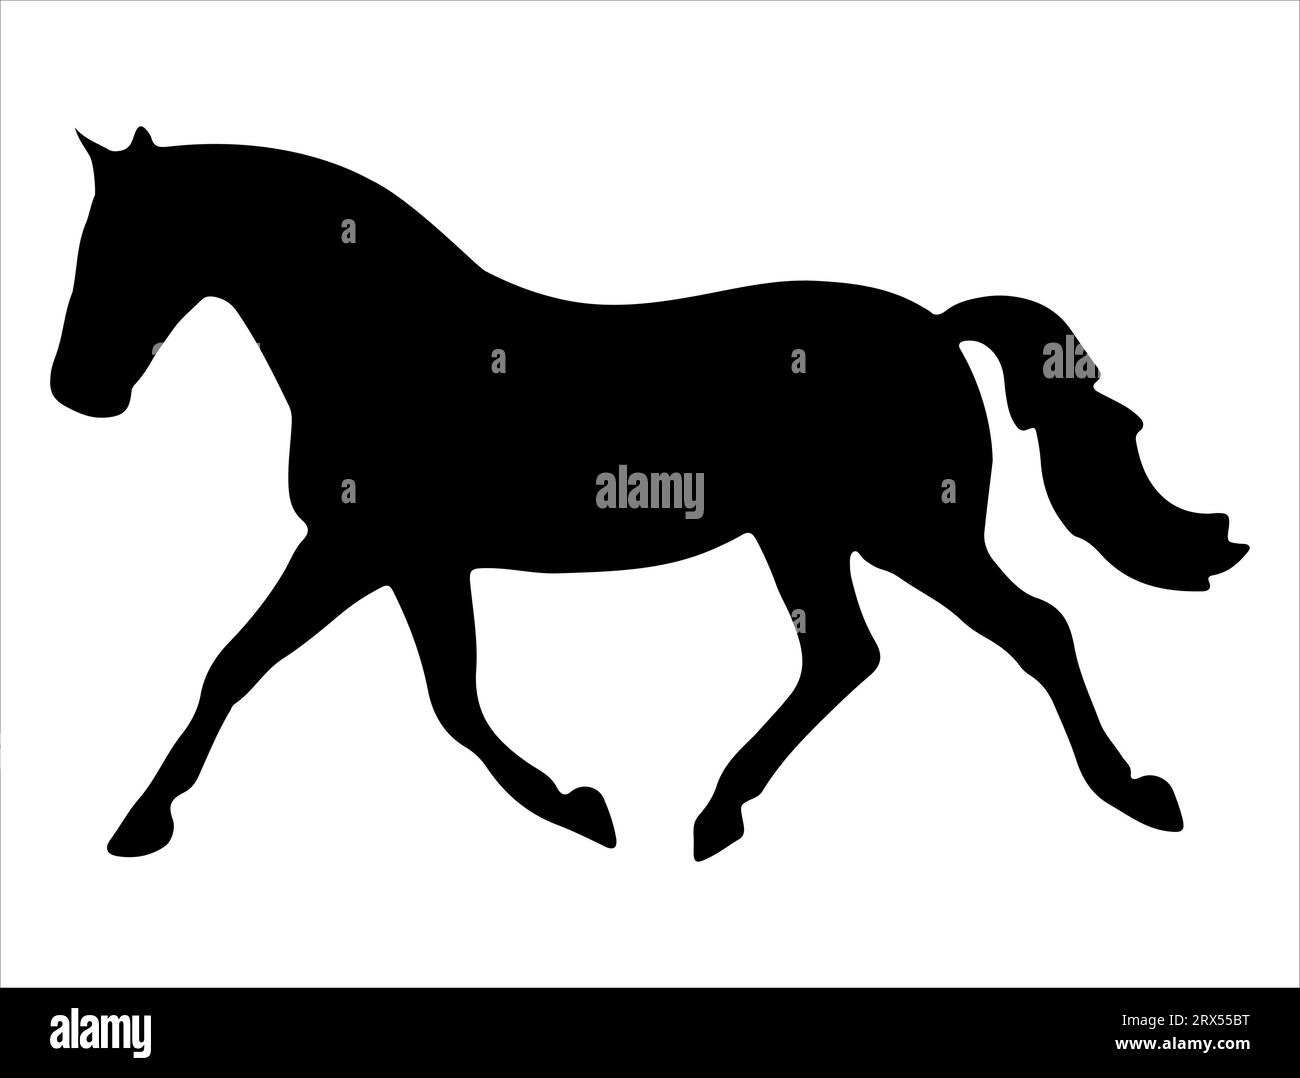 Horse silhouette vector art white background Stock Vector Image & Art ...